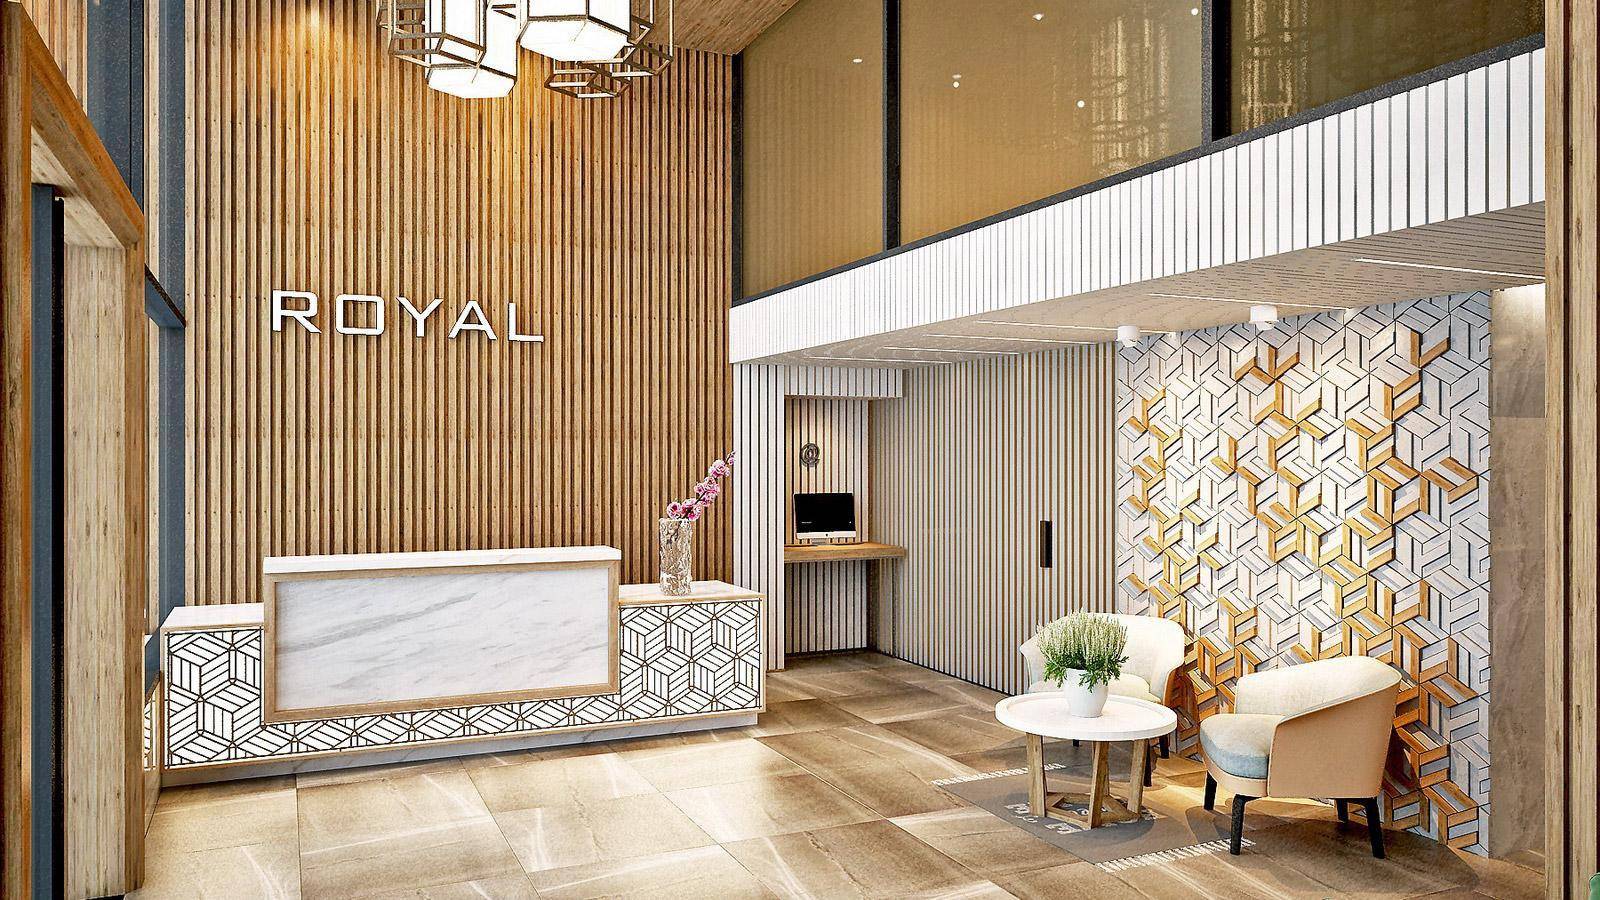 Royal HPM - Khách sạn đạt chuẩn quốc tế 4 sao 